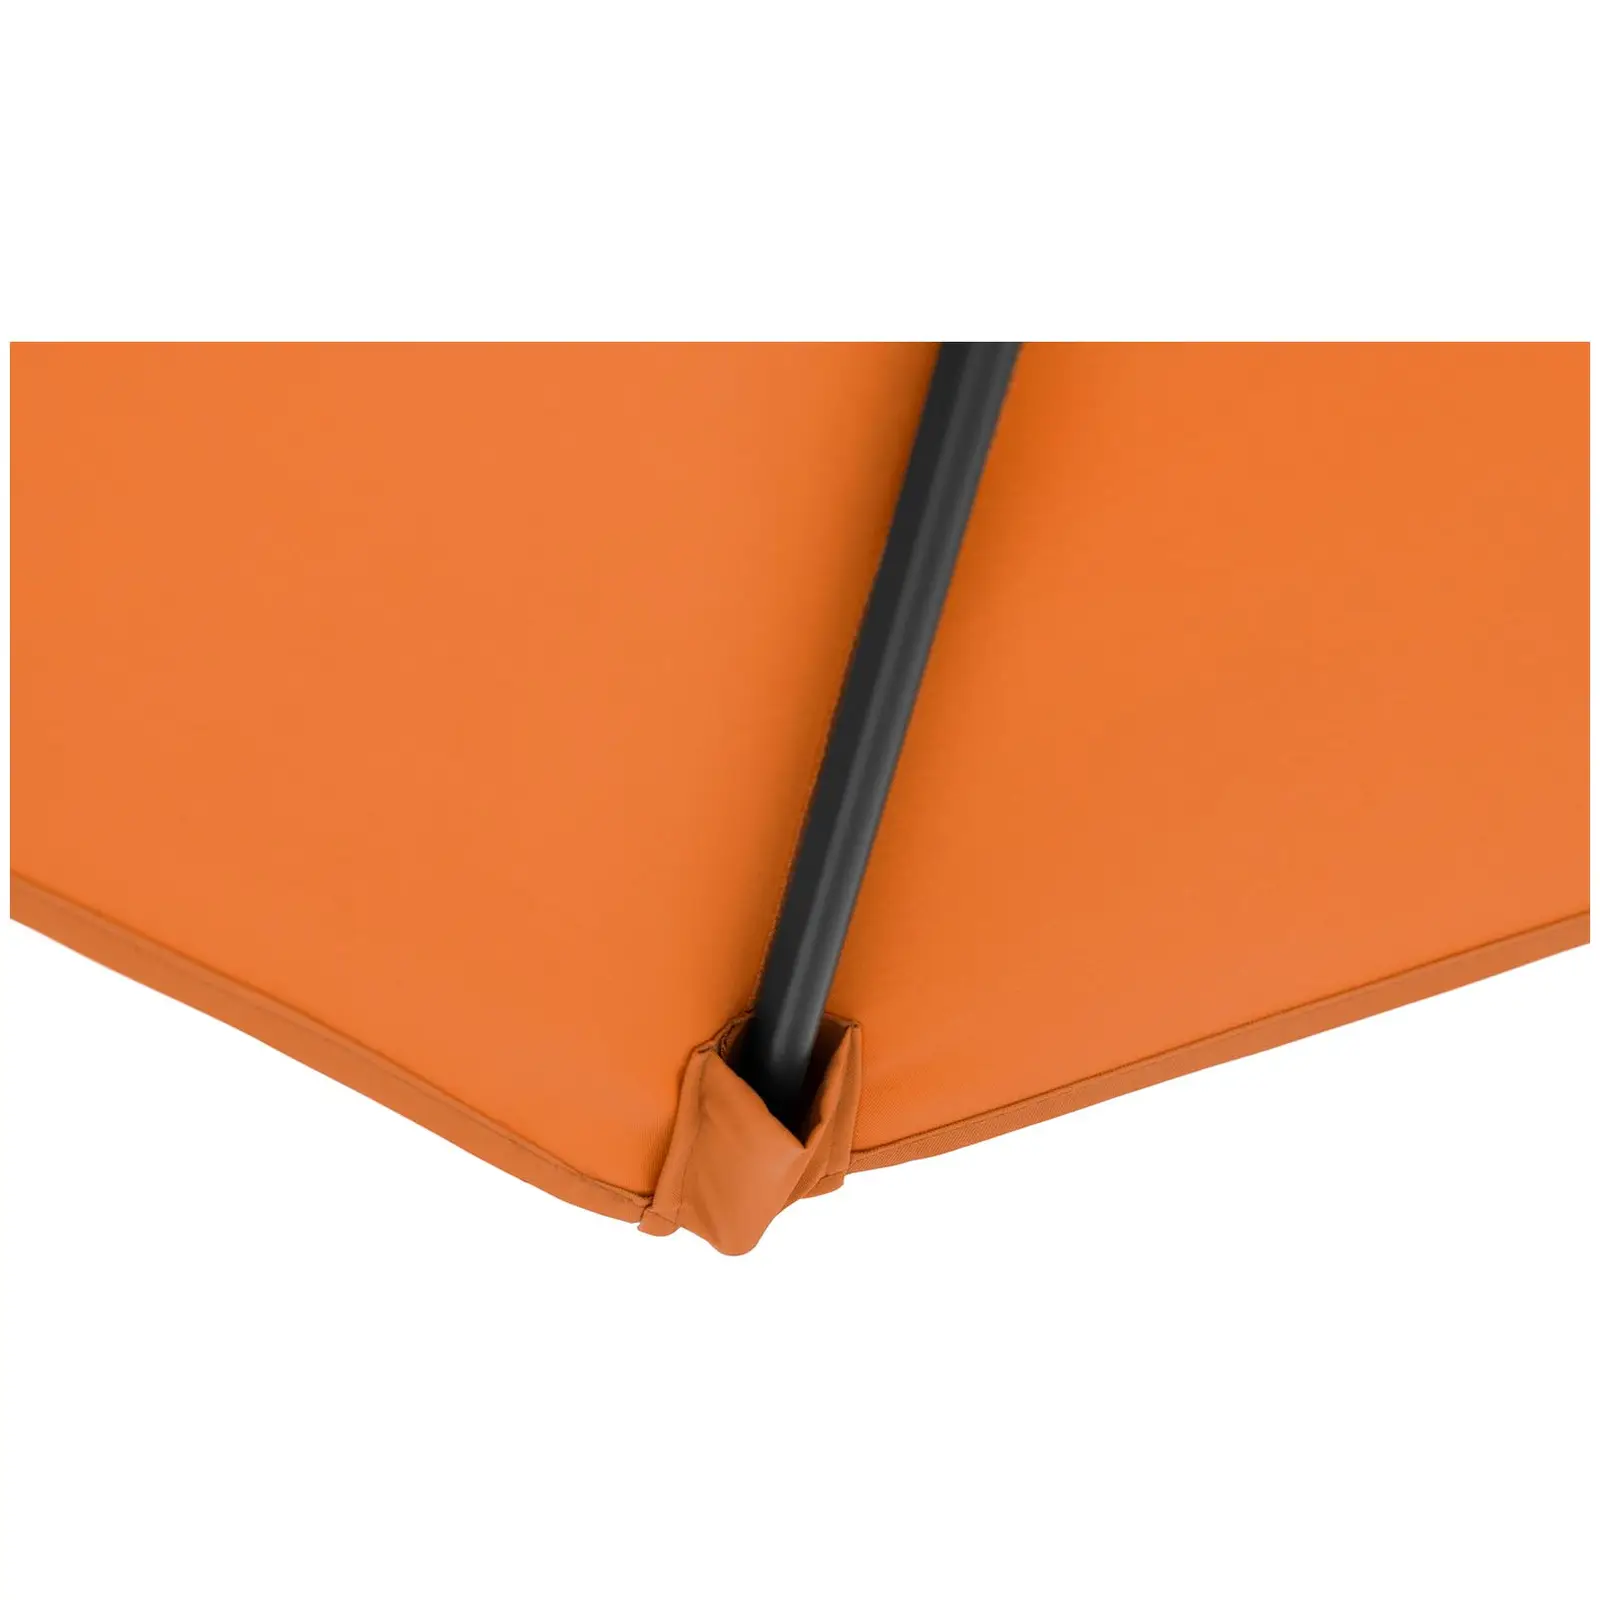 Ampelschirm - Orange - rund - Ø 300 cm - neig- und drehbar